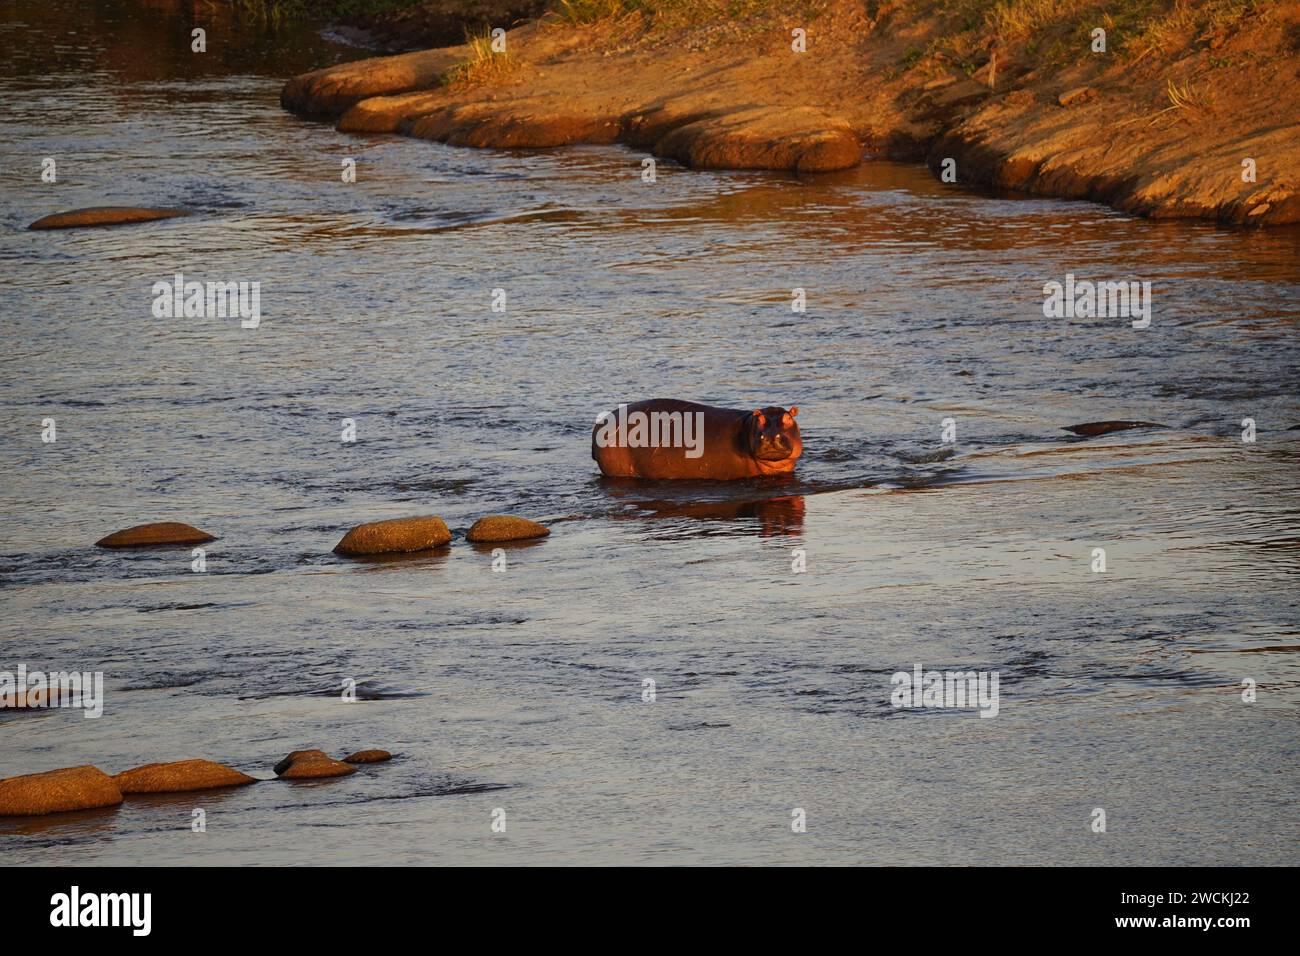 hippo in river, shore, sunrise Stock Photo